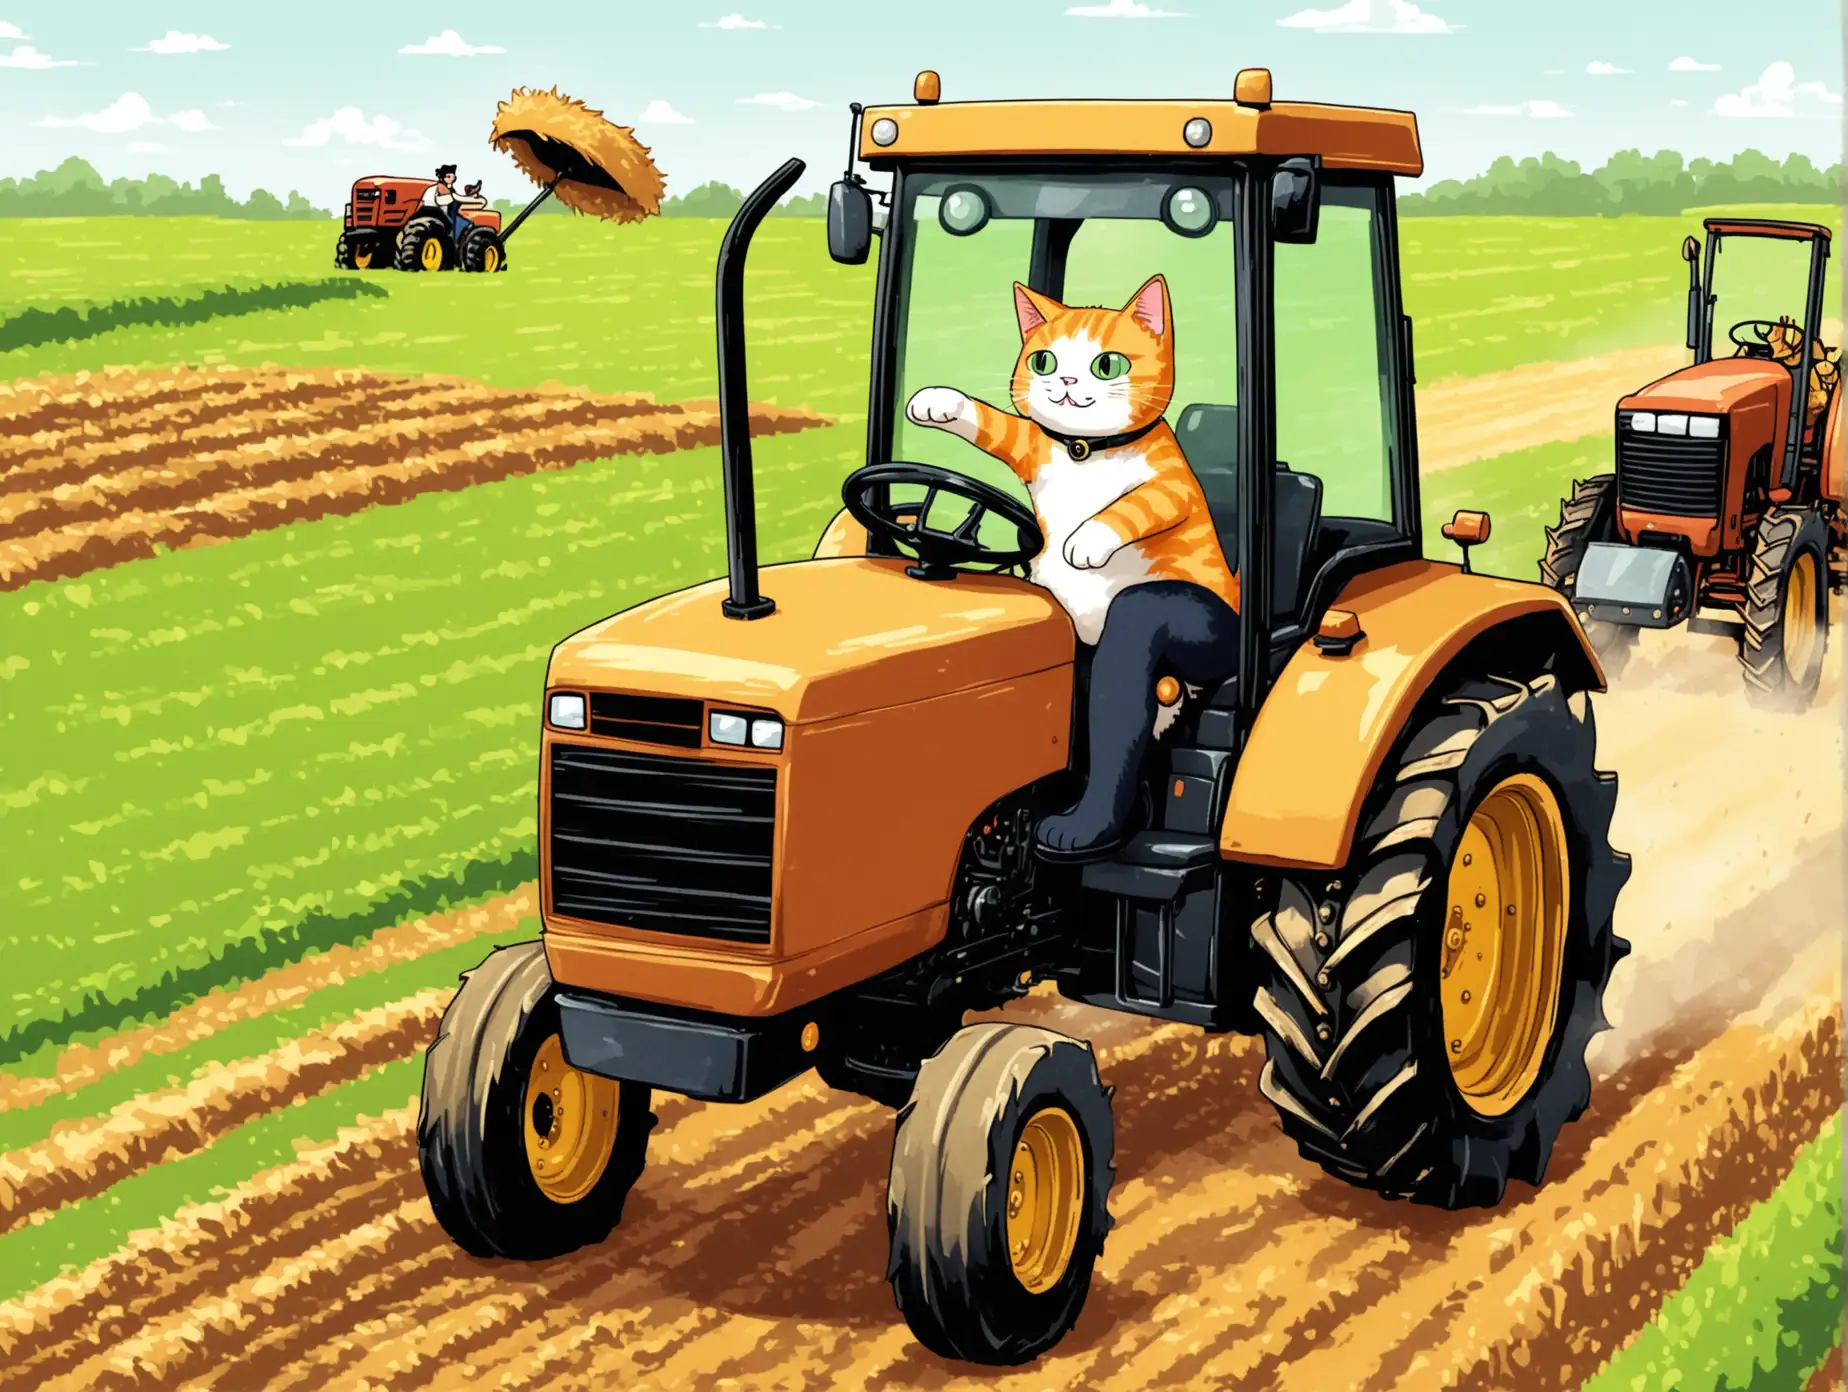 Кот за рулём трактора, управляет им